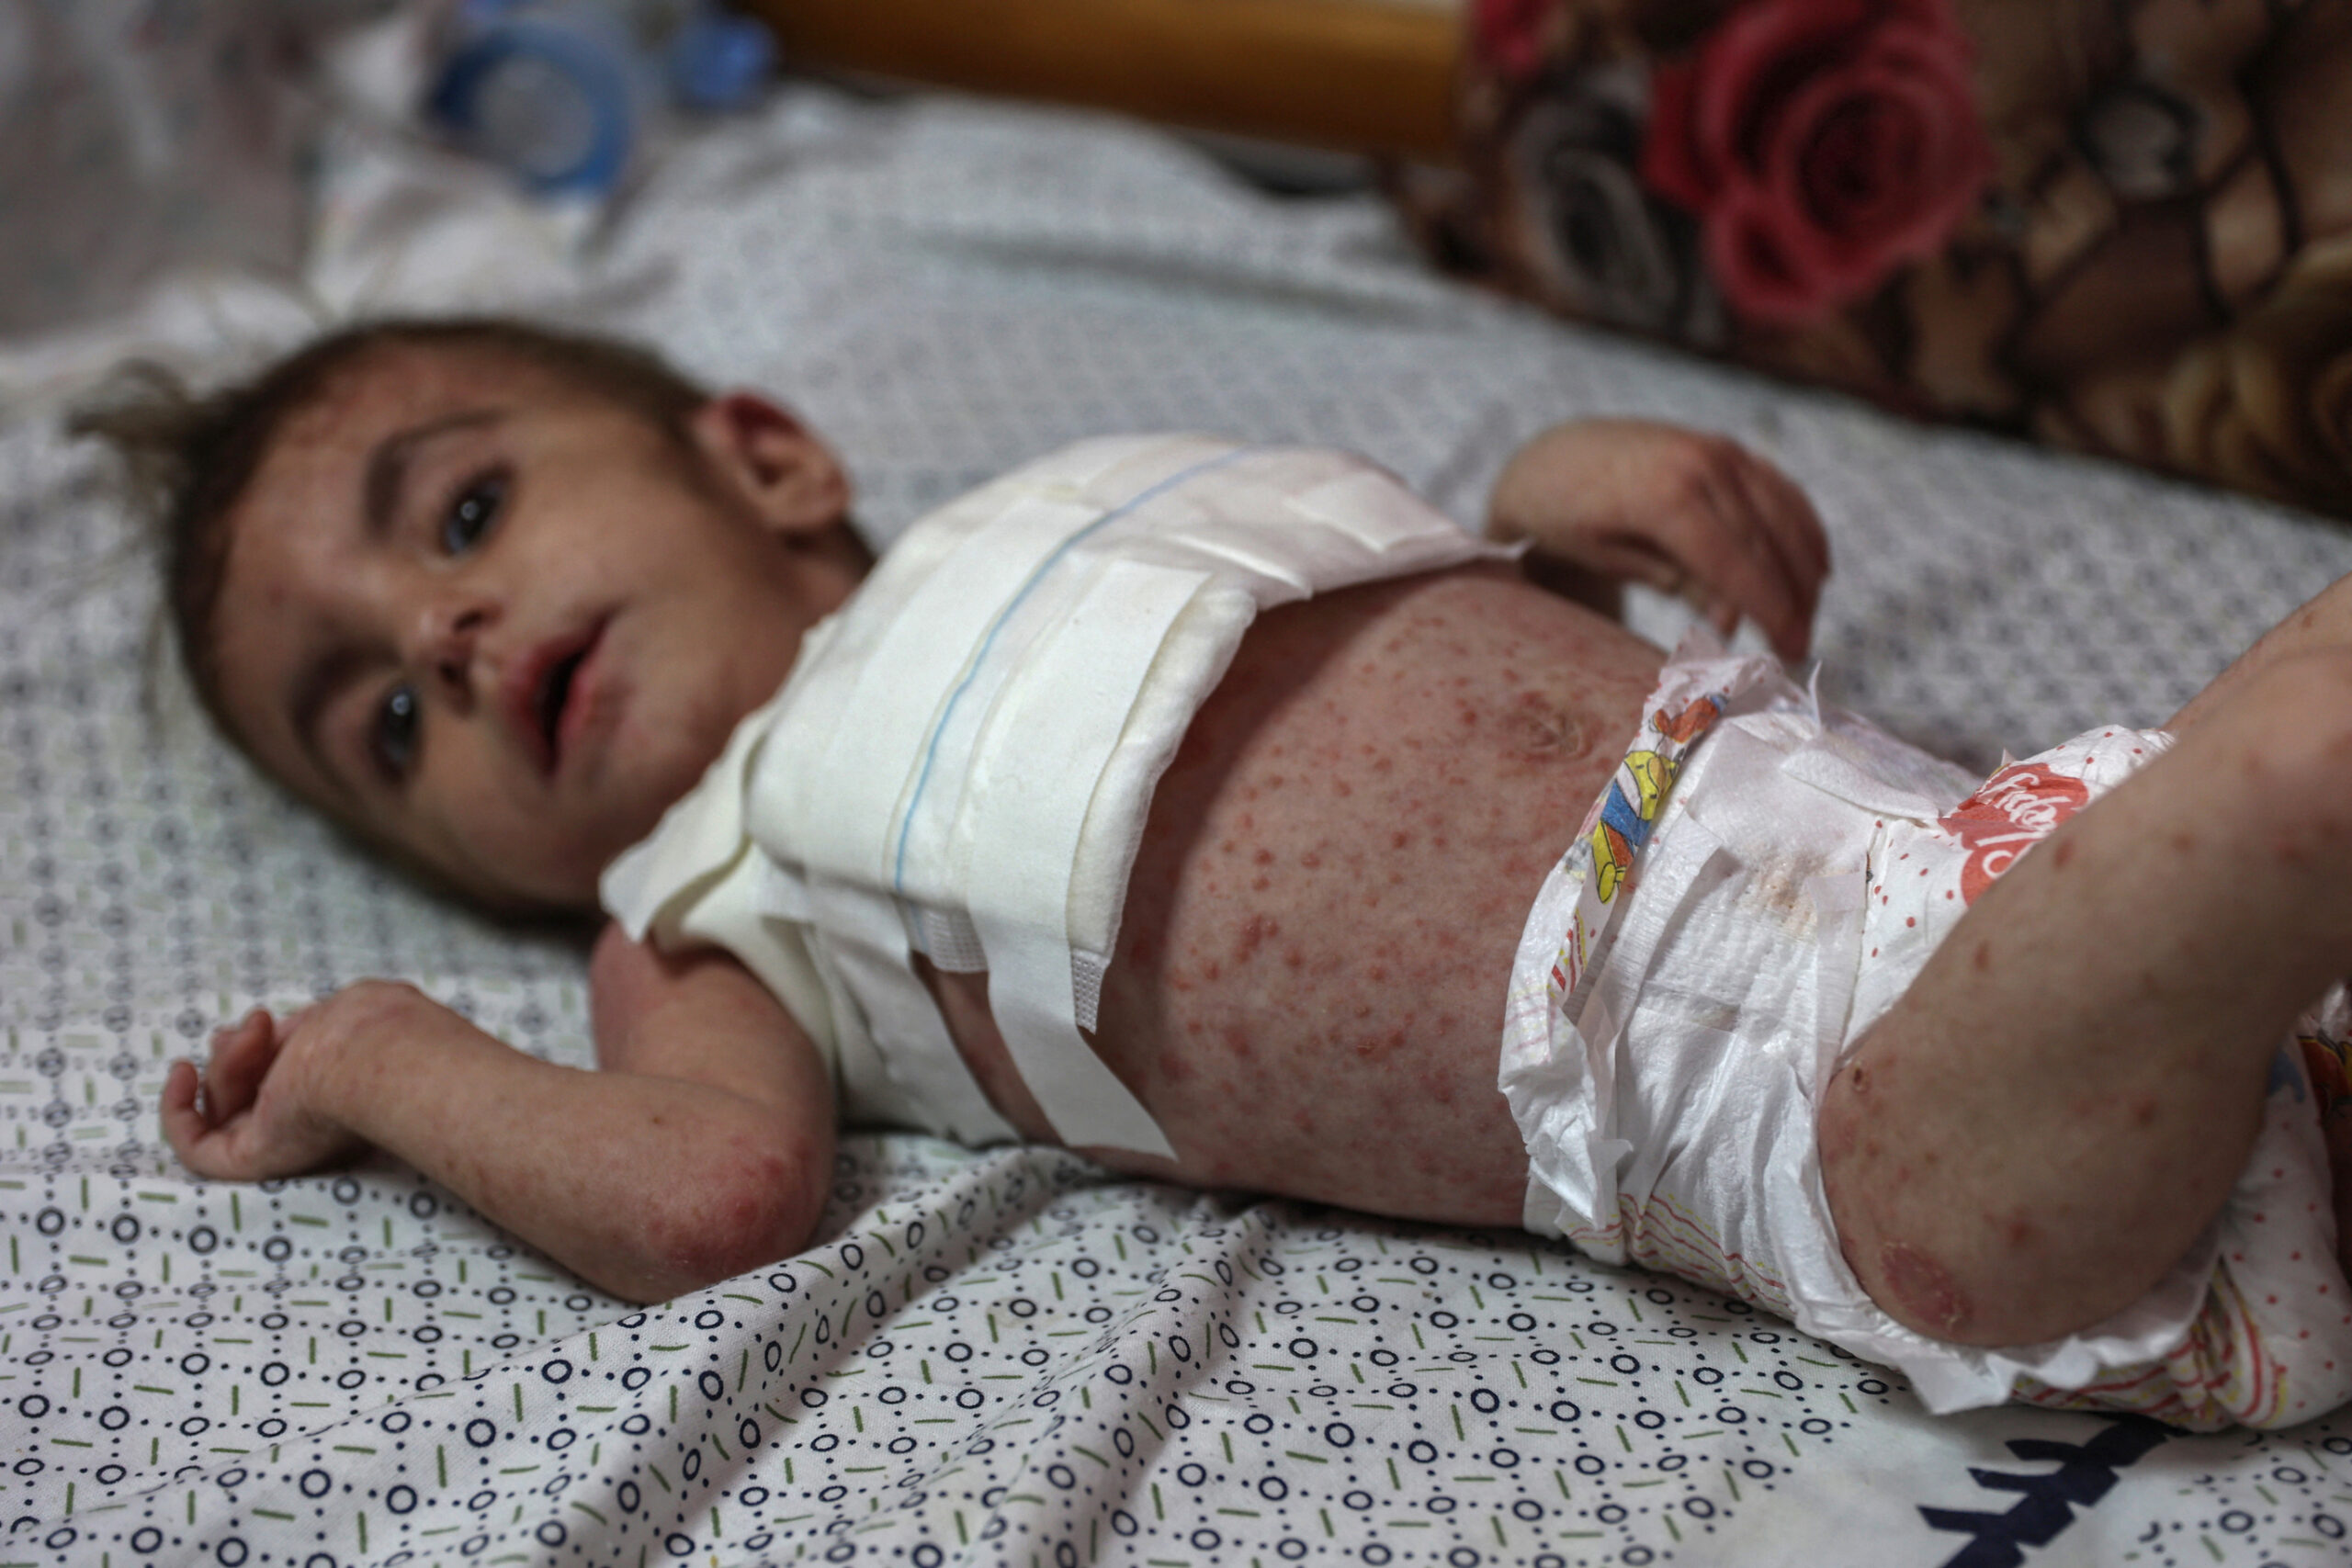 Dangerous skin diseases spreading among Gaza children